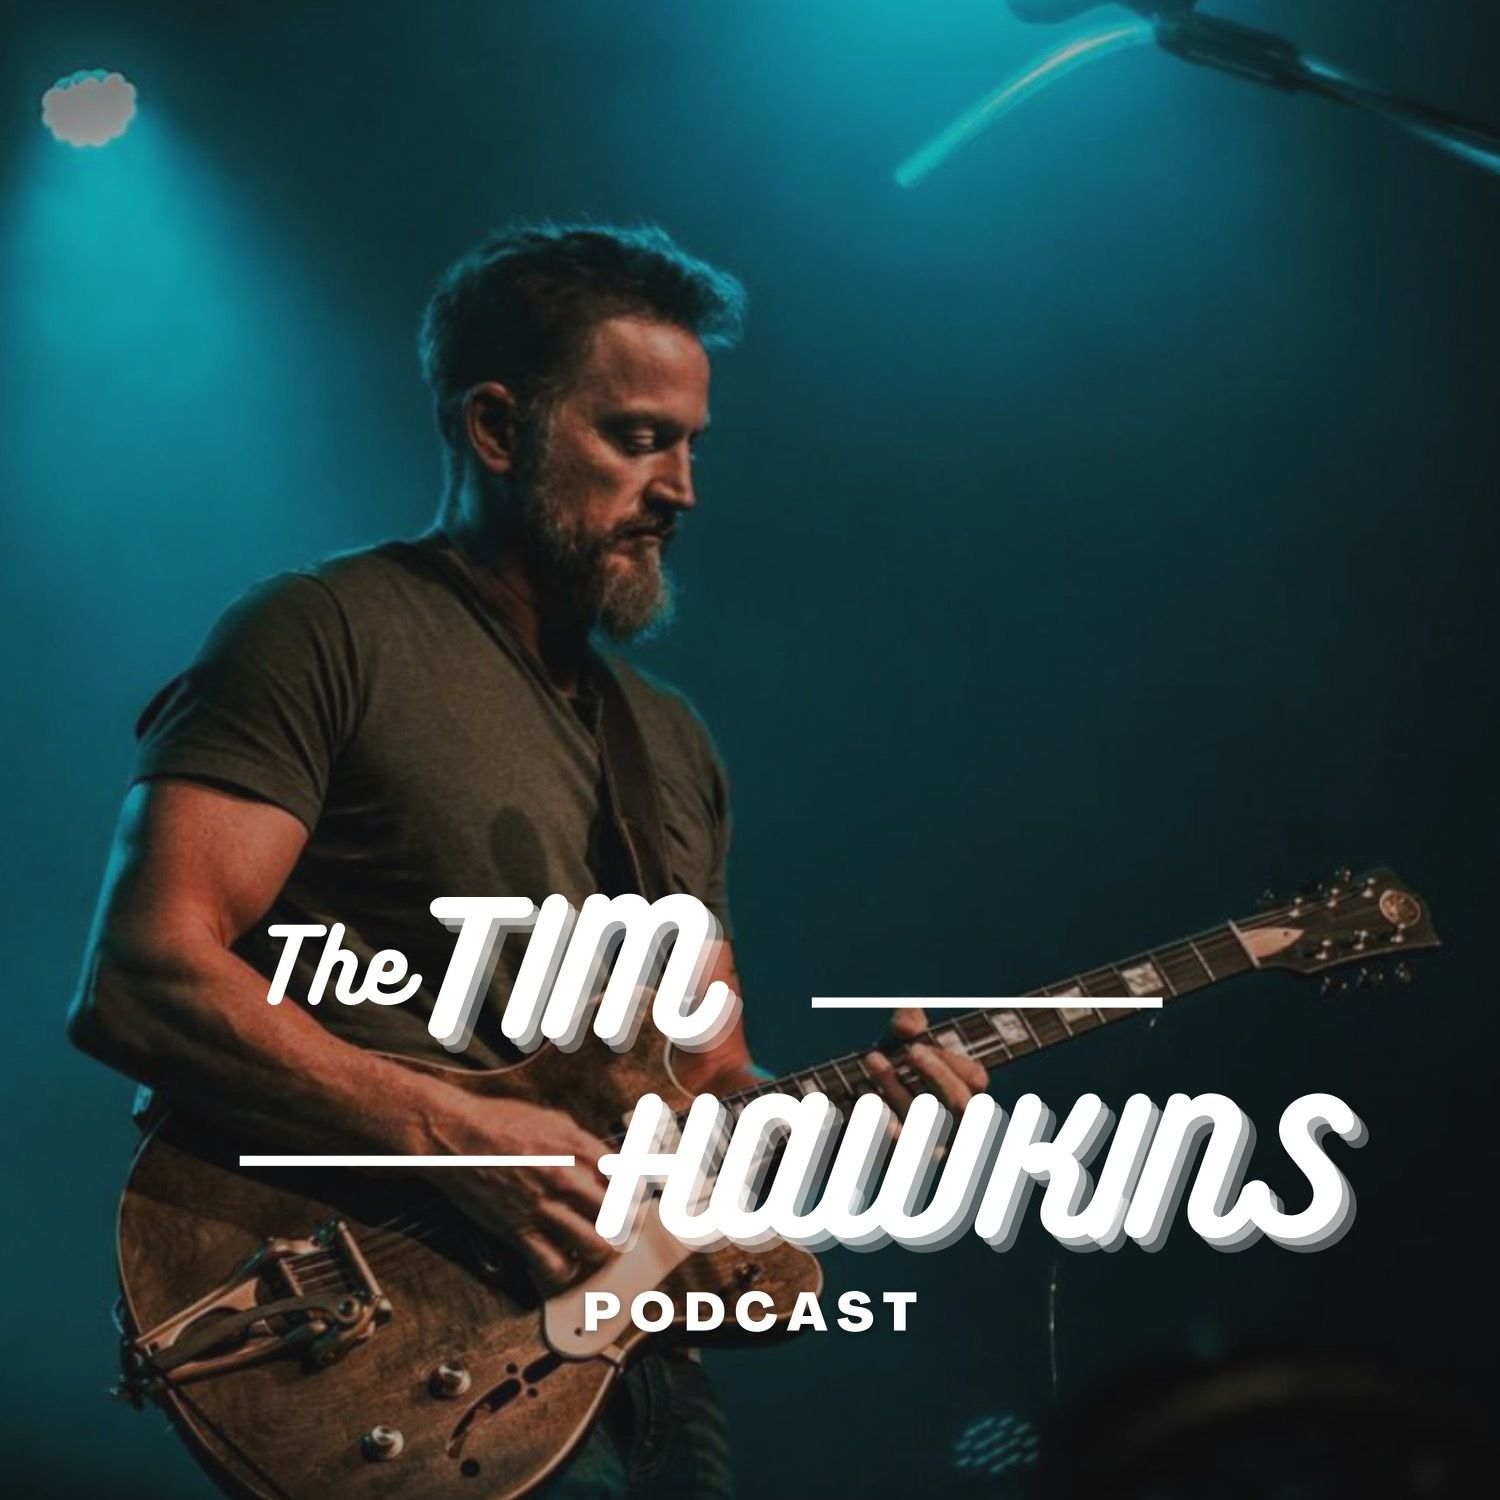 The Tim Hawkins Podcast